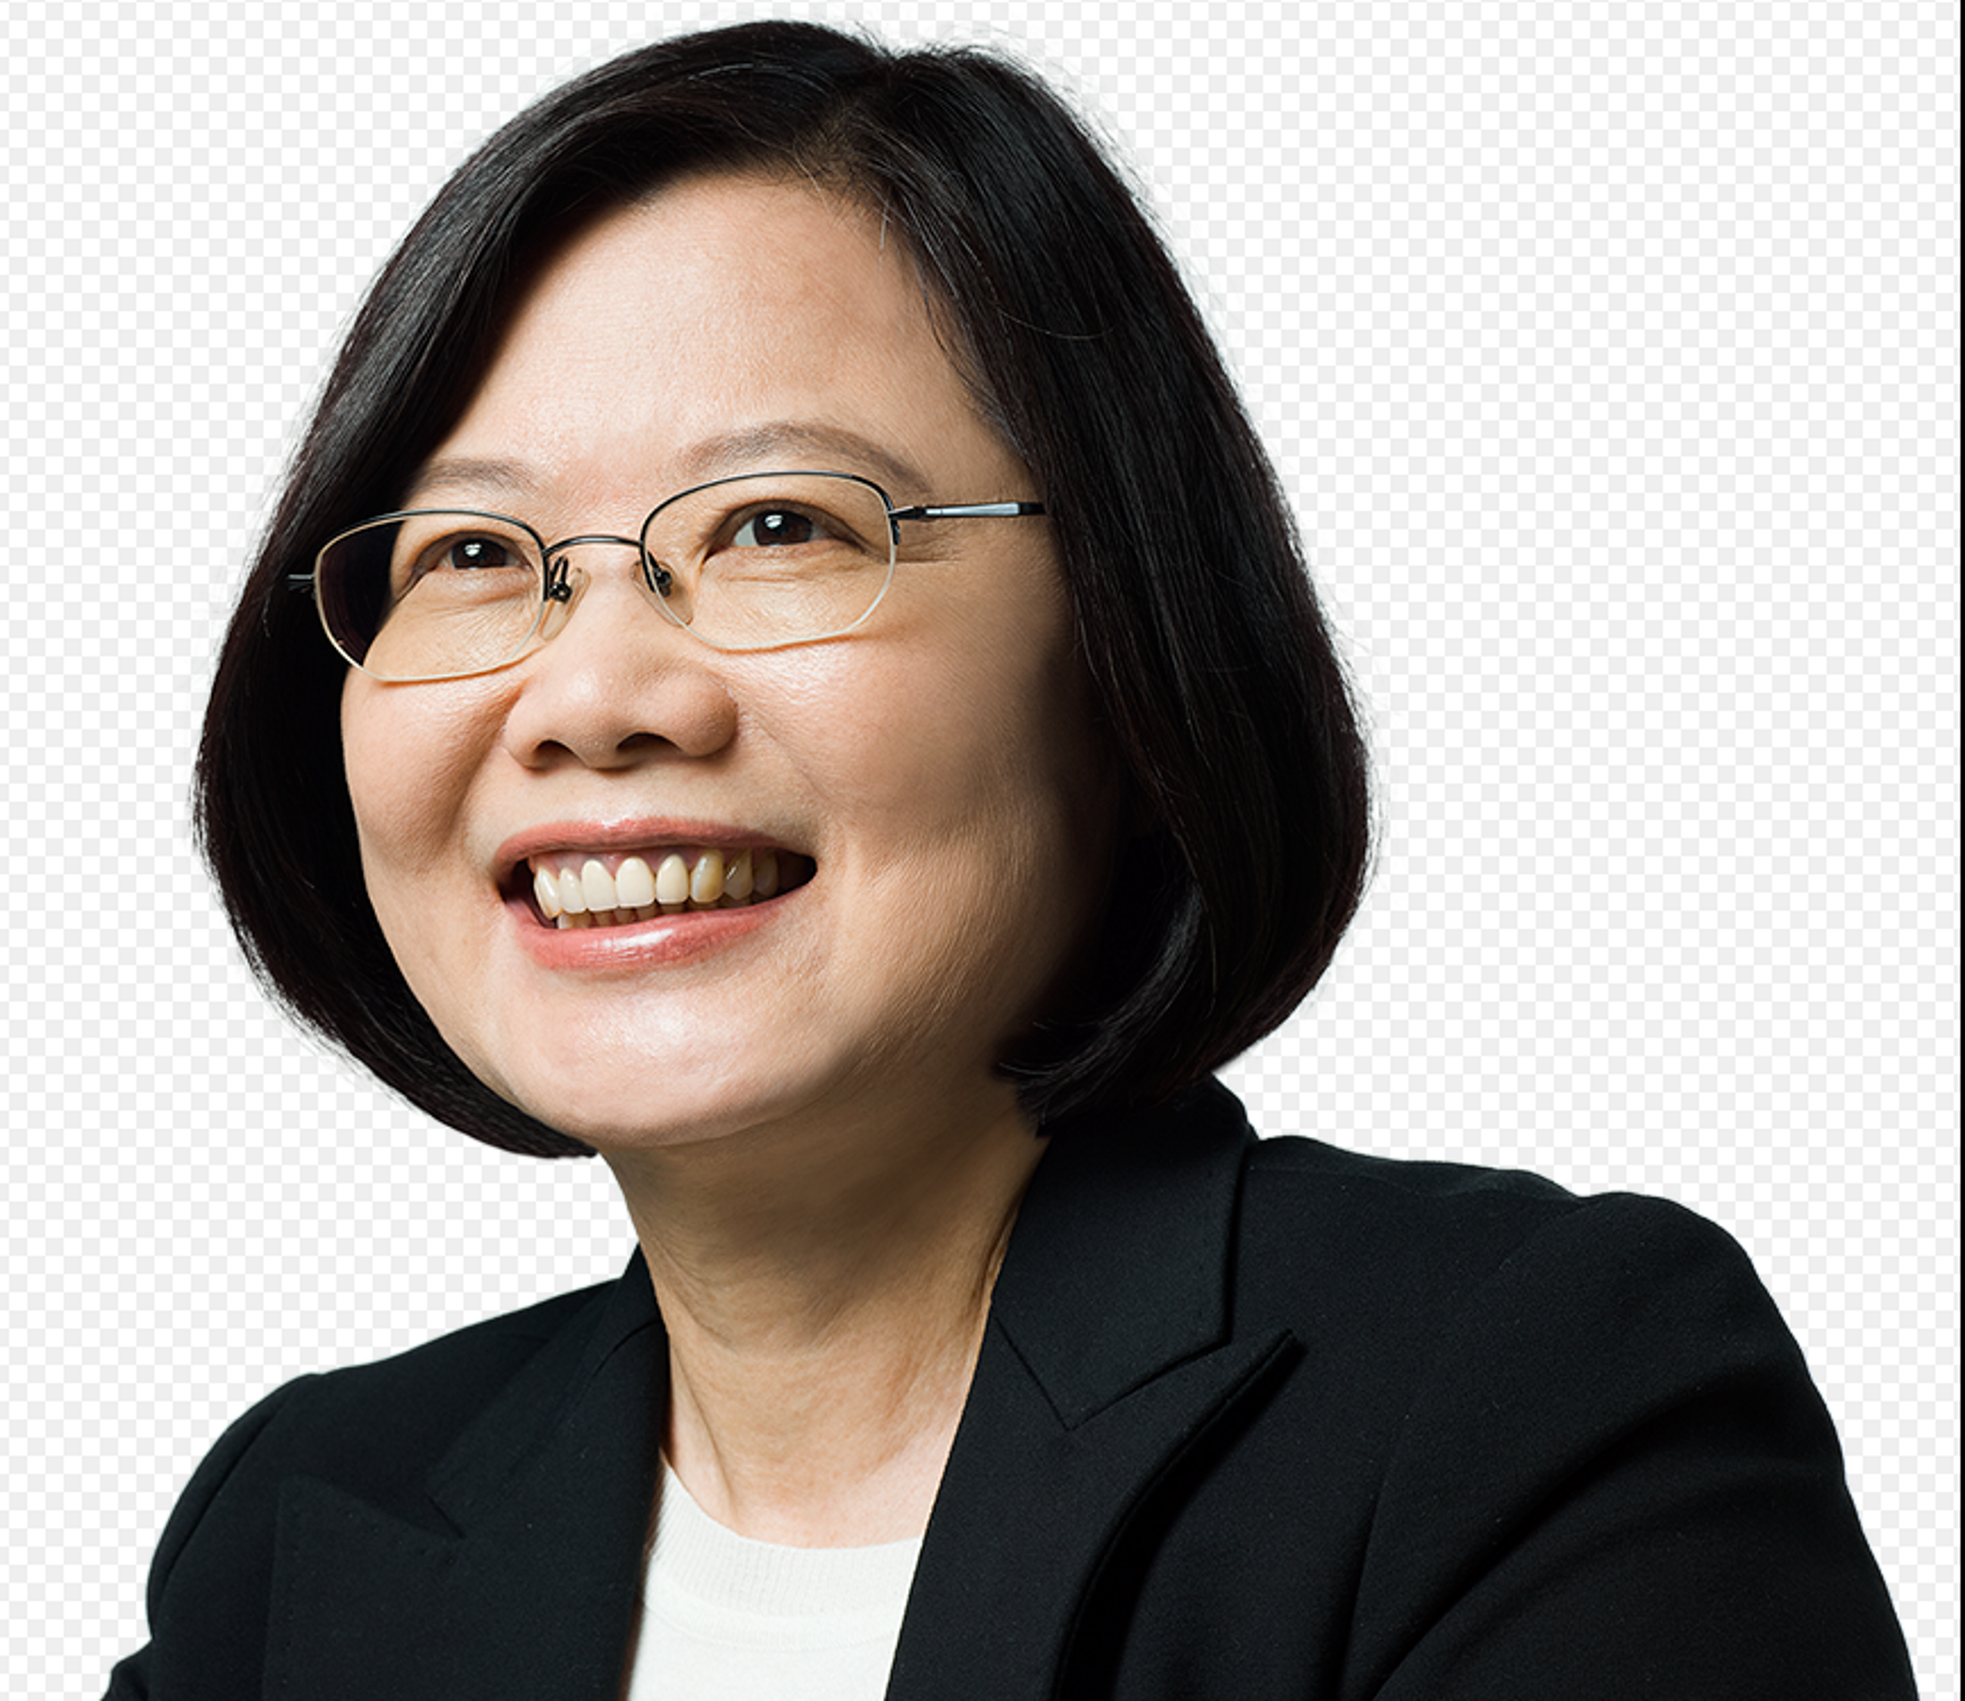 La presidenta taiwanesa, amb l'estelada per la democràcia (segons un diari asiàtic)